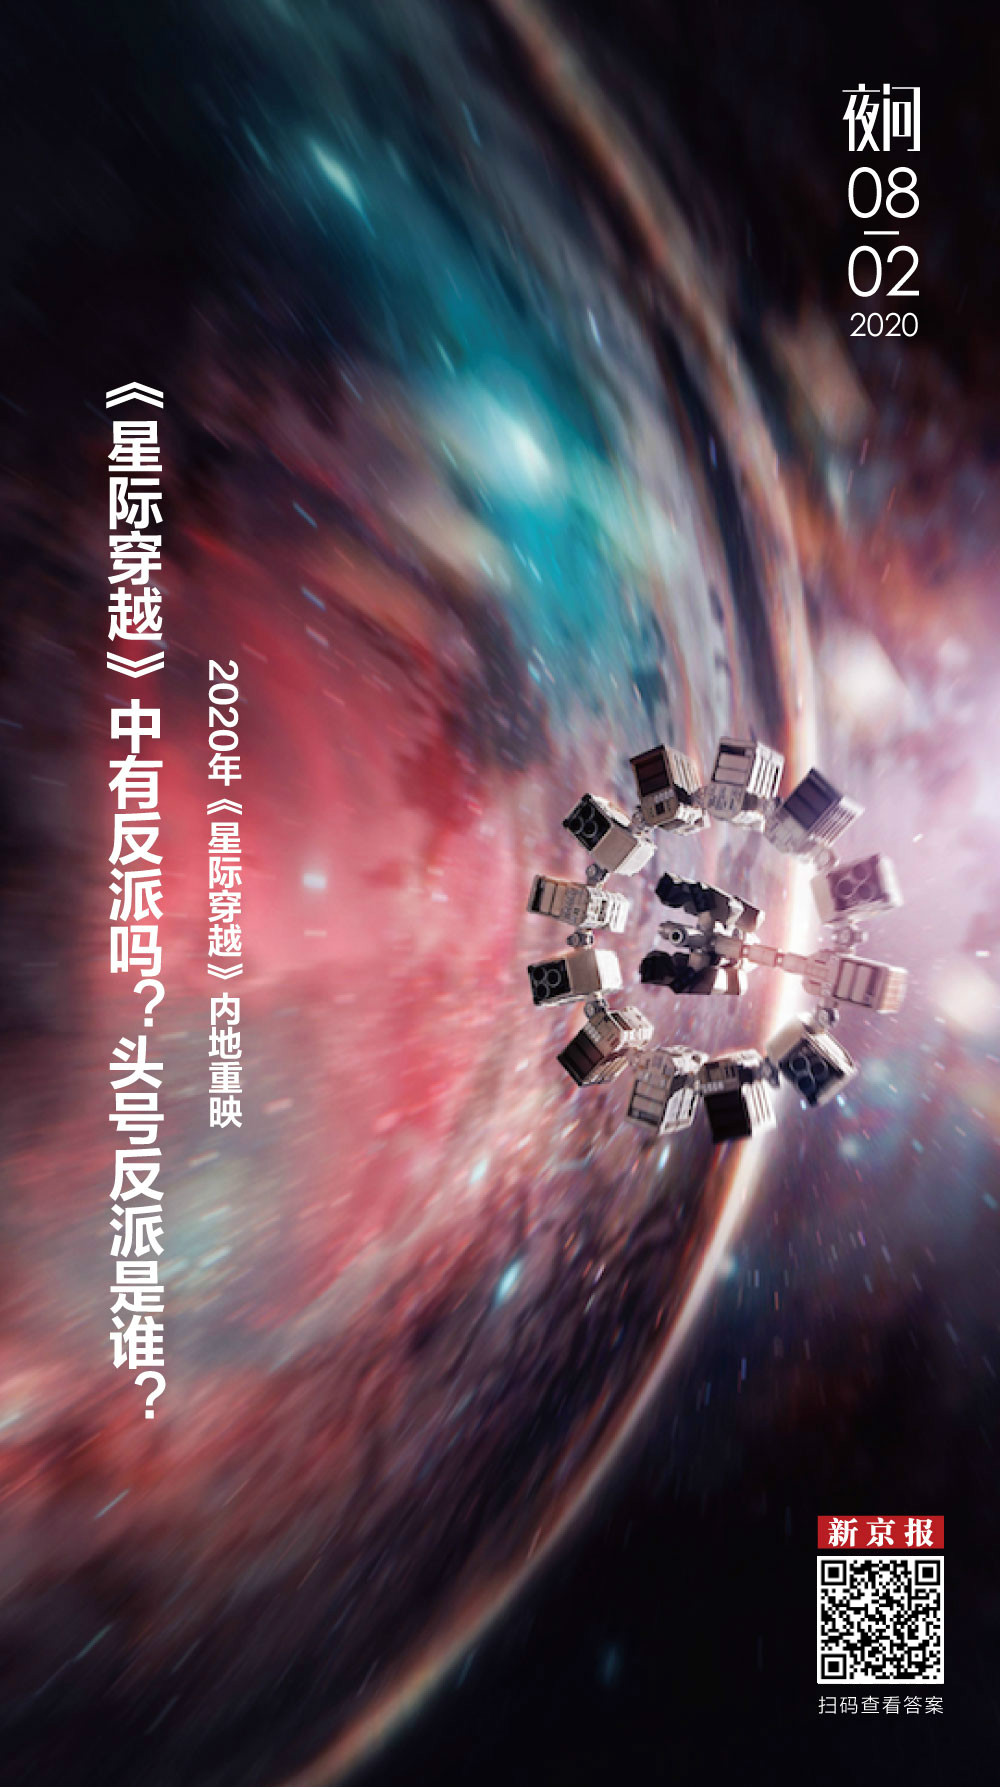 《星际穿越》复映，请记得这个全片中的大反派丨夜问 - 娱乐 - 新京报网